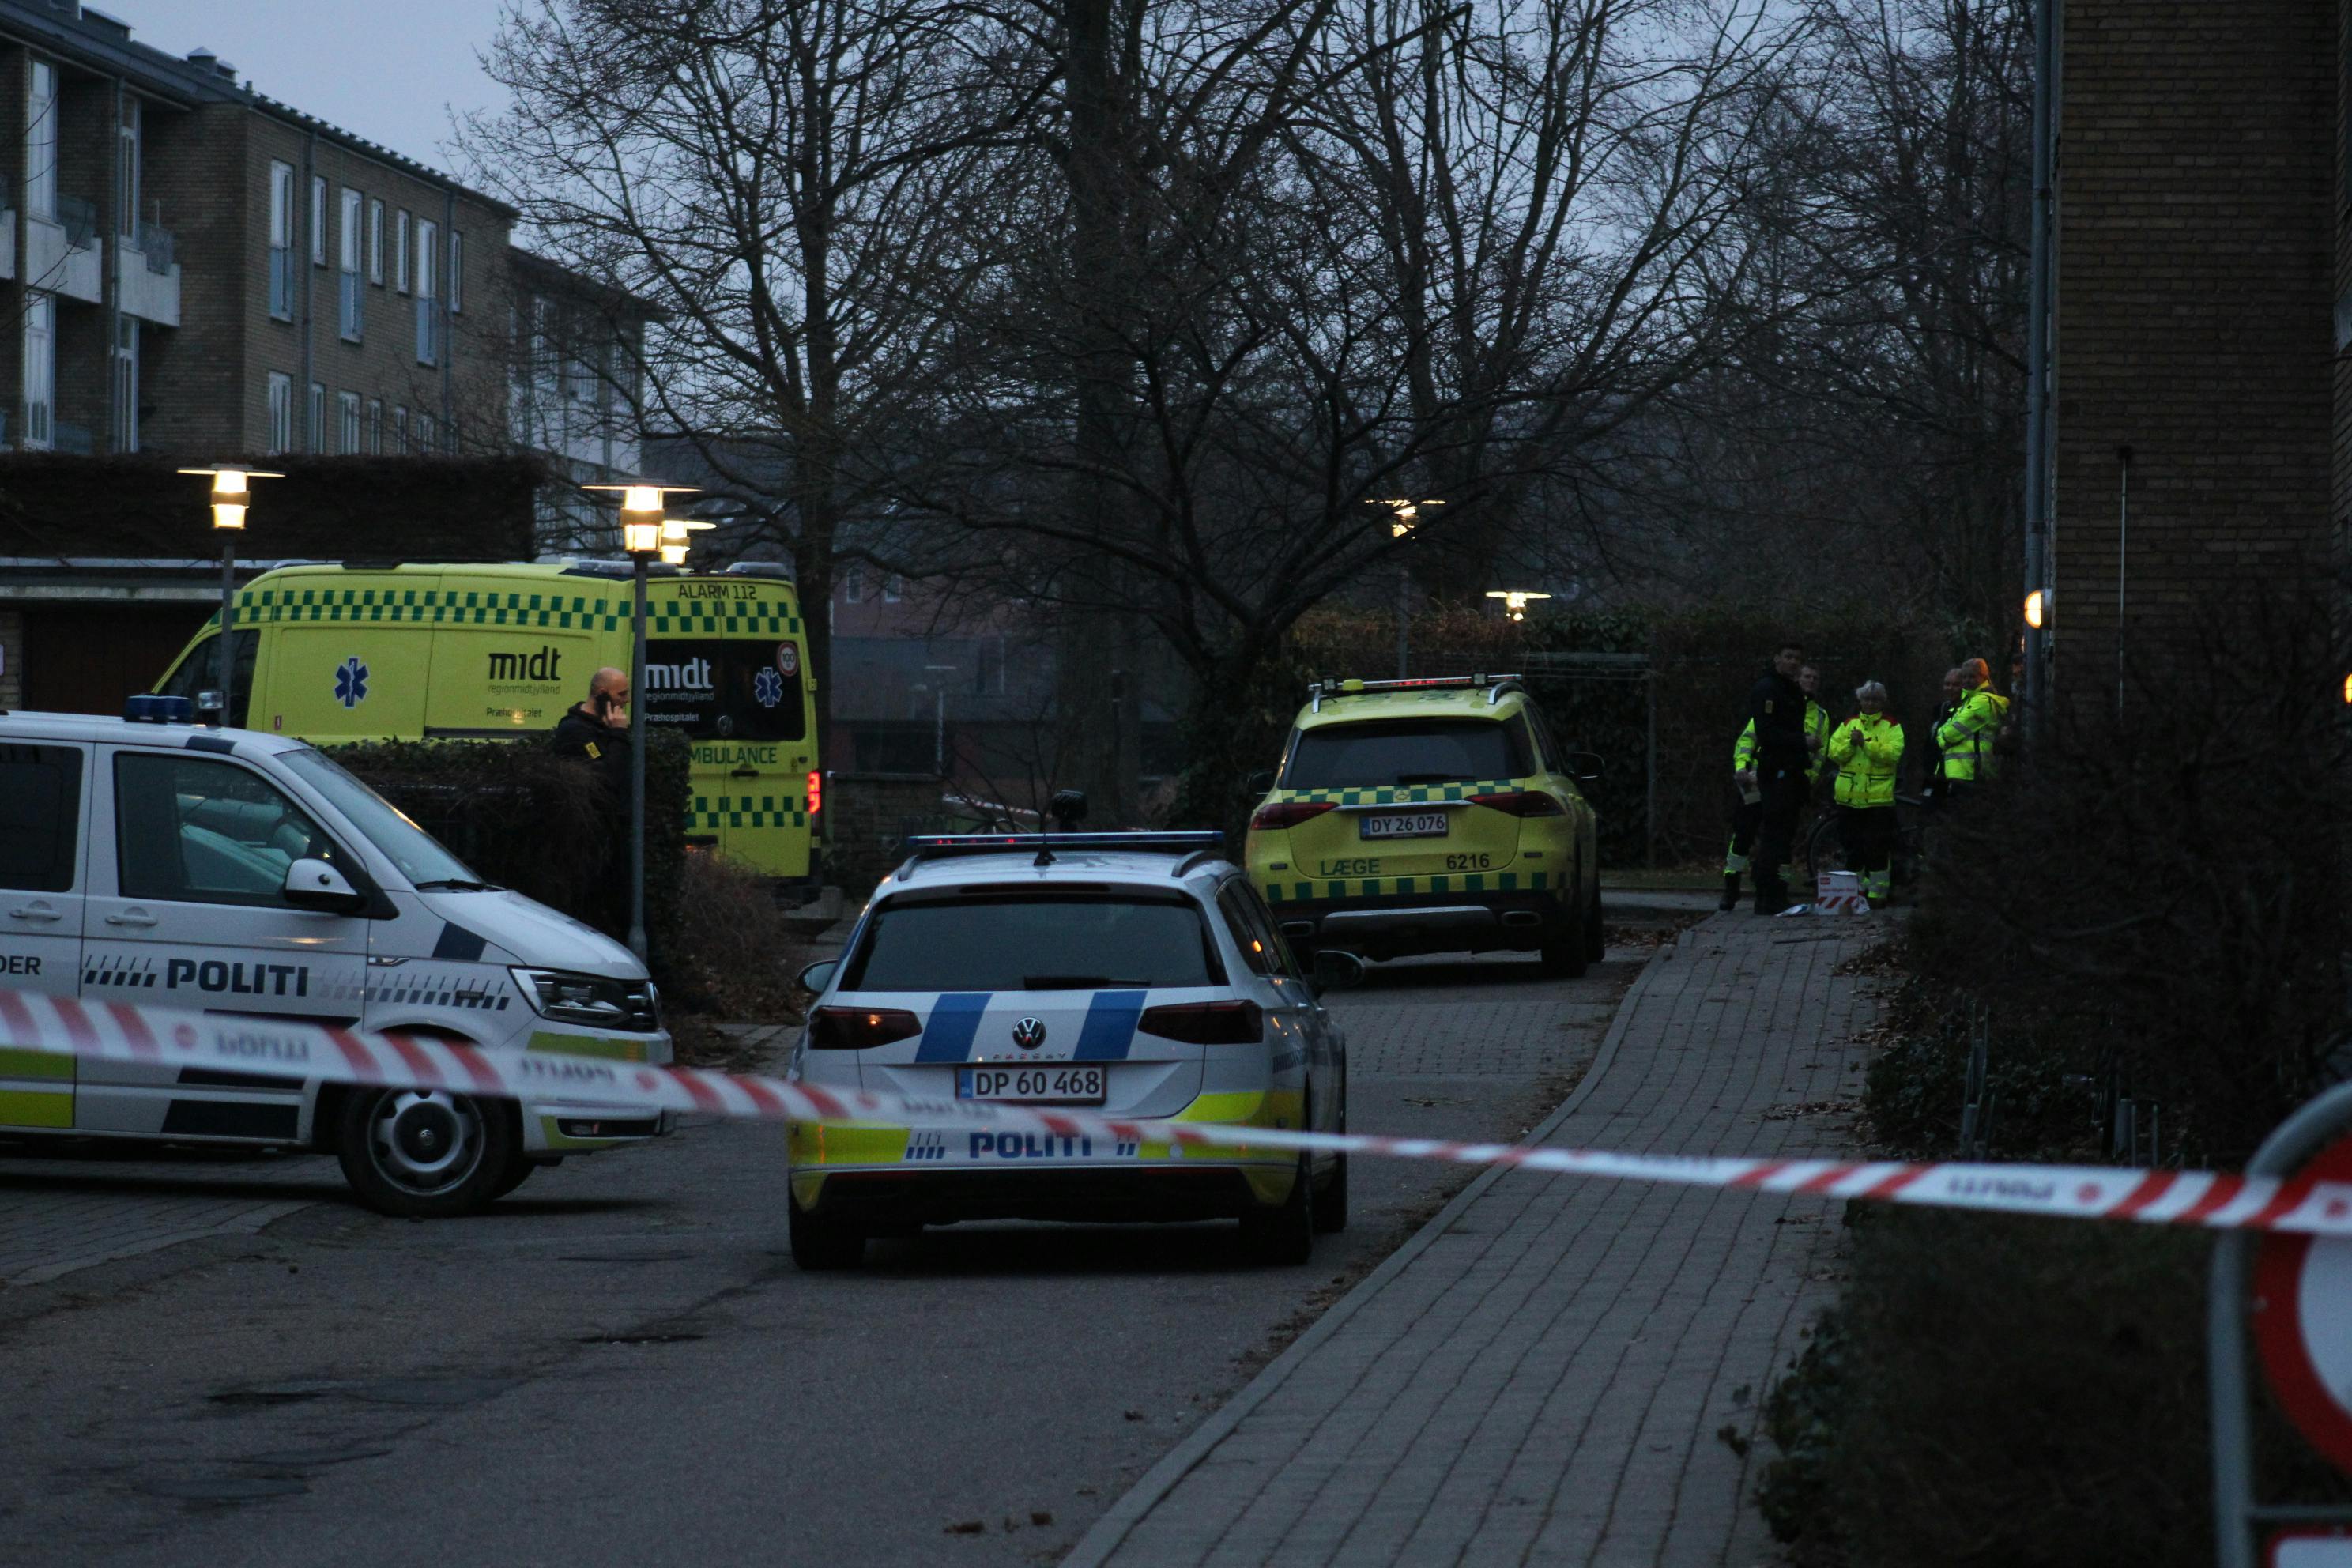 Politiet var søndag til stede på en adresse i Odder, hvor en ældre mand blev fundet død. Politiet efterforsker nu dødsfaldet som mistænkeligt.